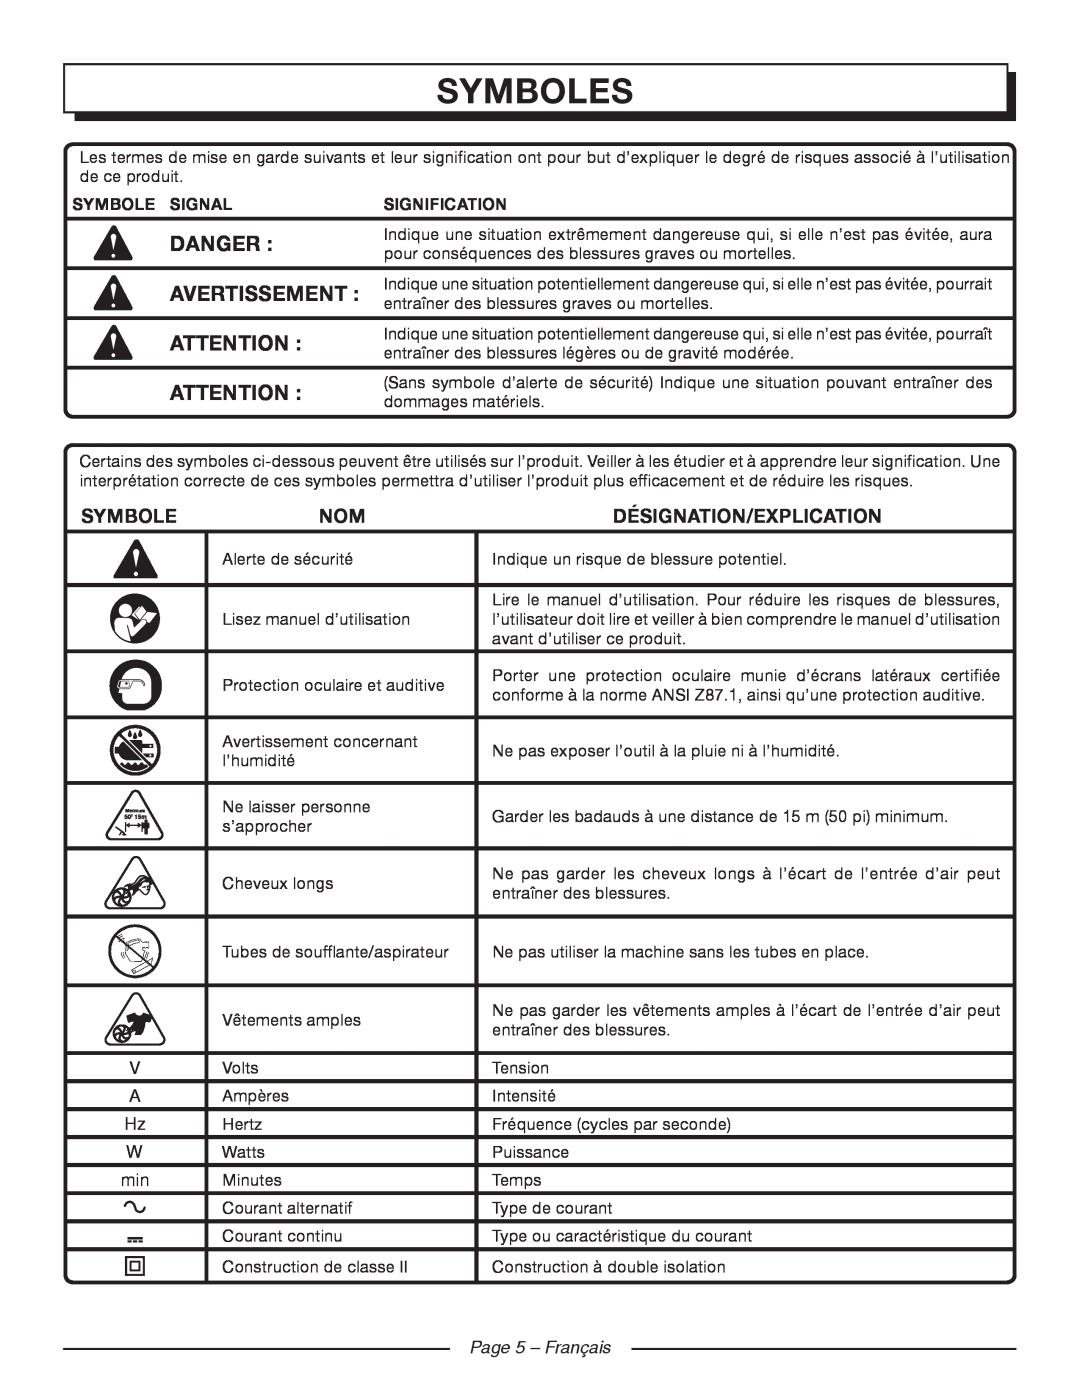 Homelite UT42120 Symboles, Avertissement, Désignation/Explication, Symbole Signal, Signification, Page 5 - Français 